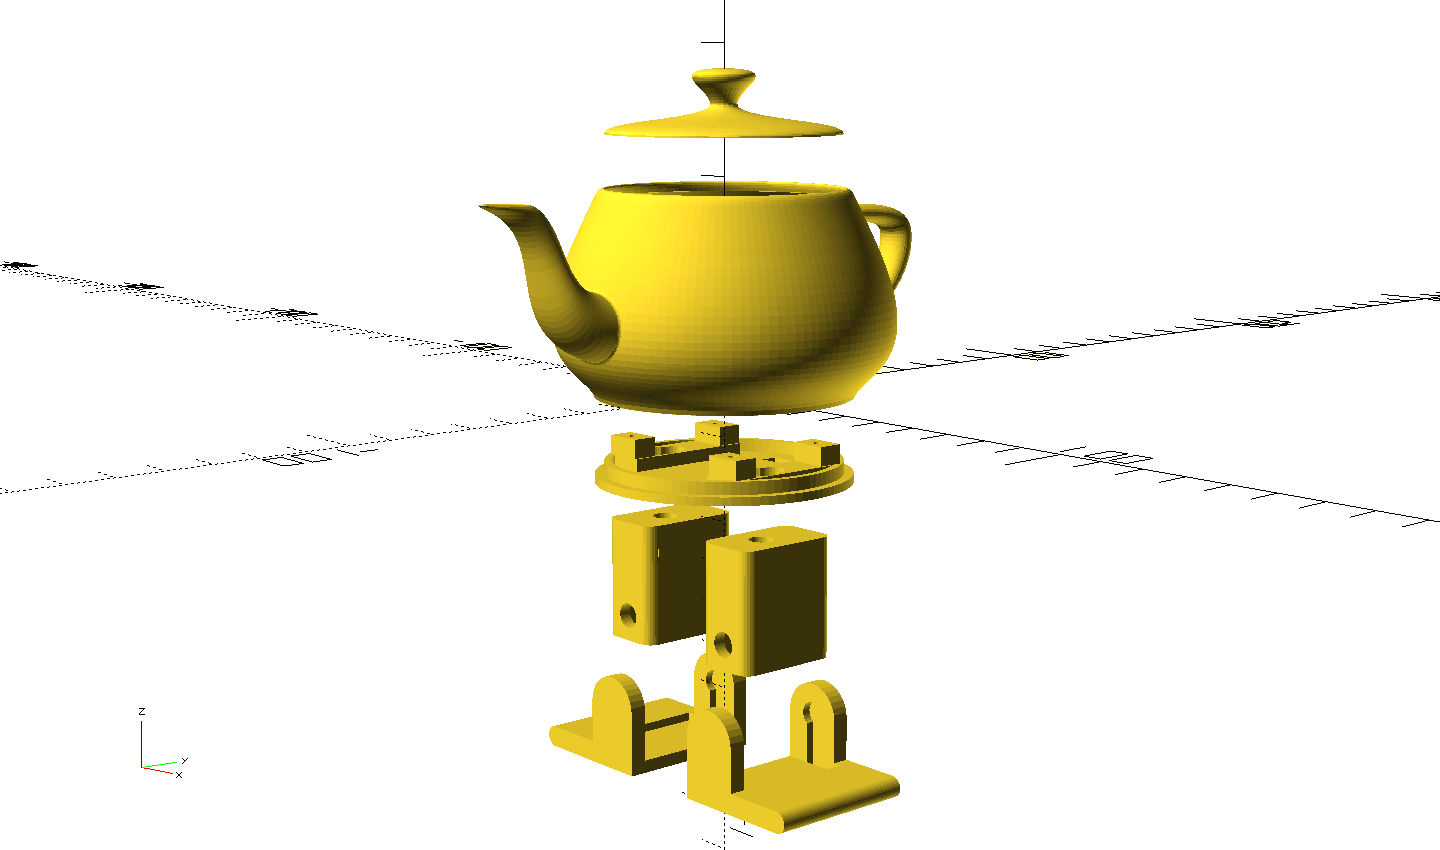 3D models forming the robotic teapot